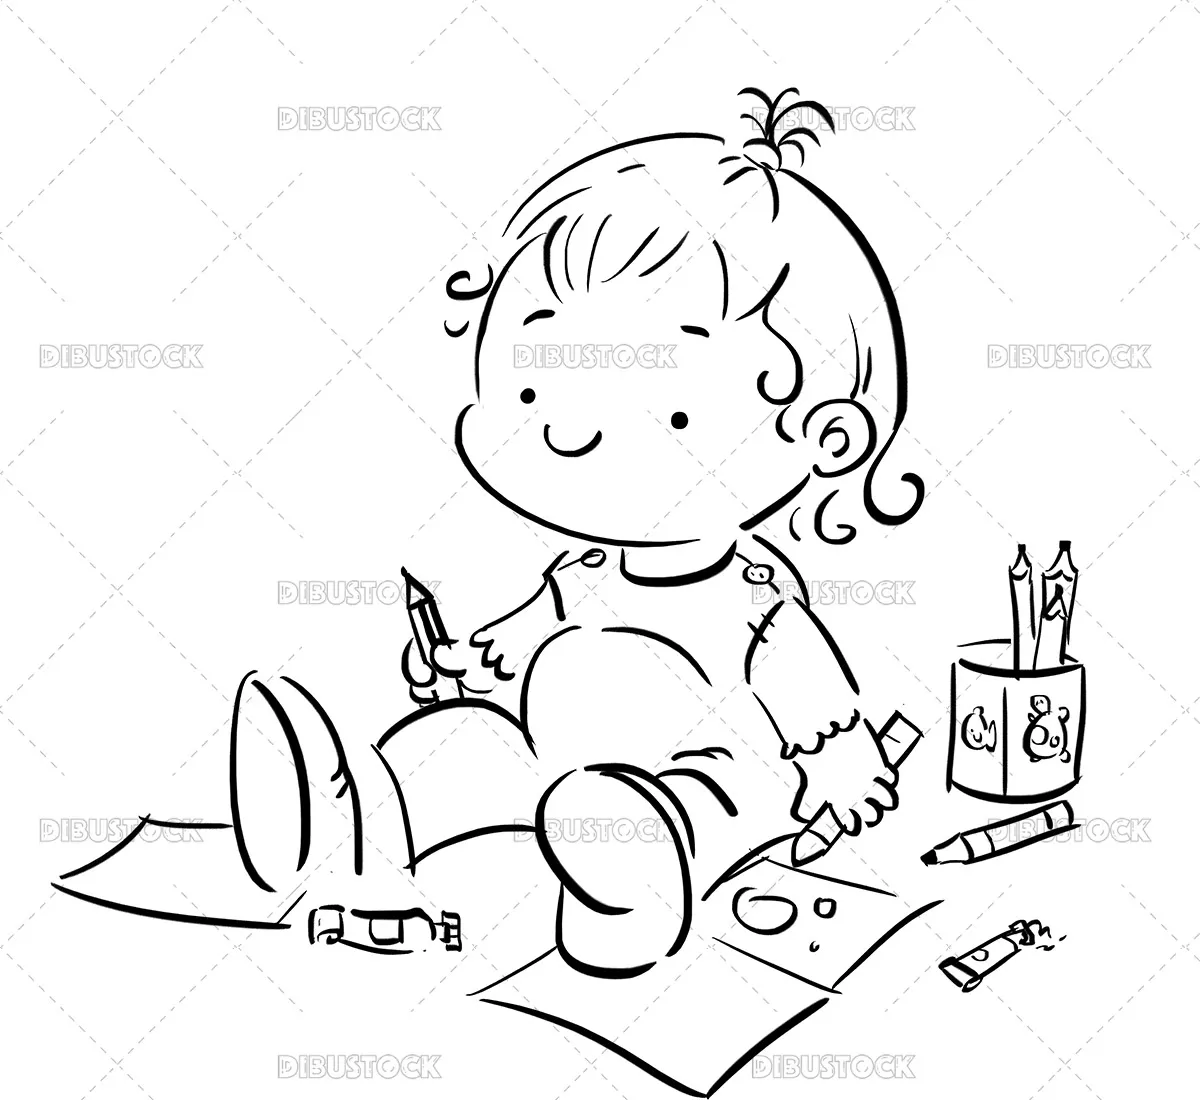 Dibujo para colorear de un bebé feliz pintando en un papel - Dibustock,  dibujos e ilustraciones infantiles para cuentos